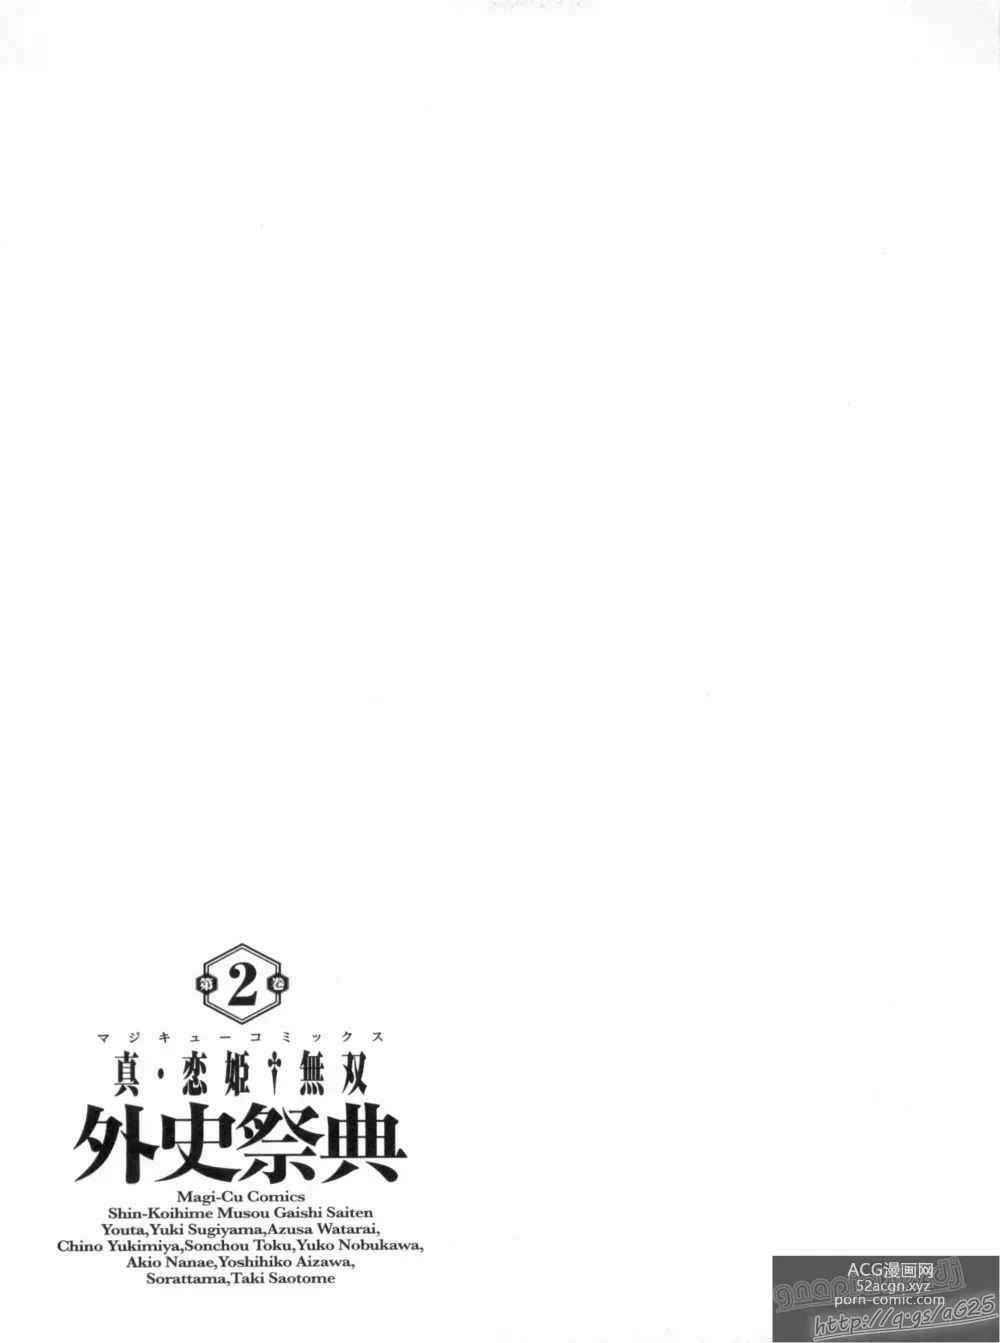 Page 161 of manga Shin Koihime Musou Gaishi Saiten VOL.2